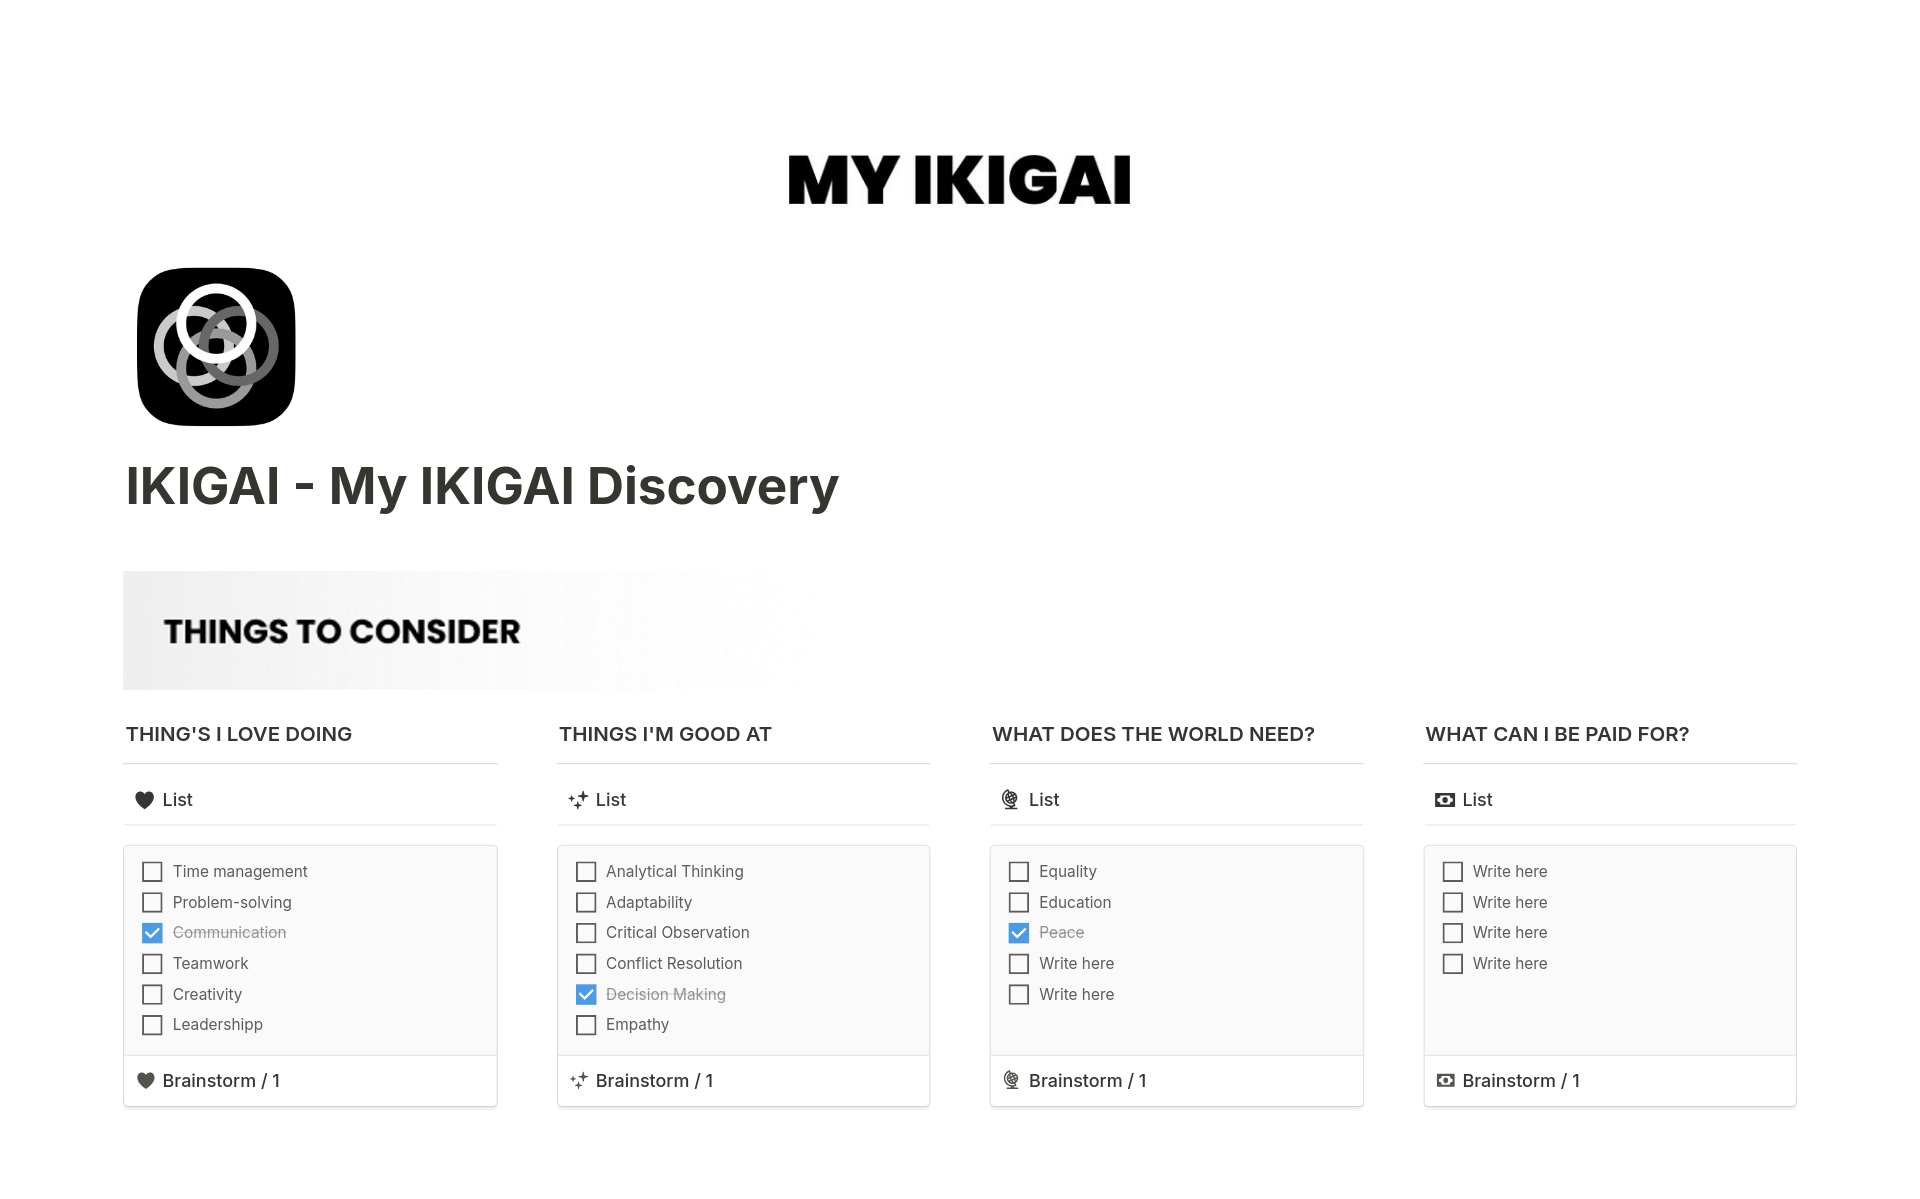 Vista previa de plantilla para IKIGAI - My IKIGAI Discovery